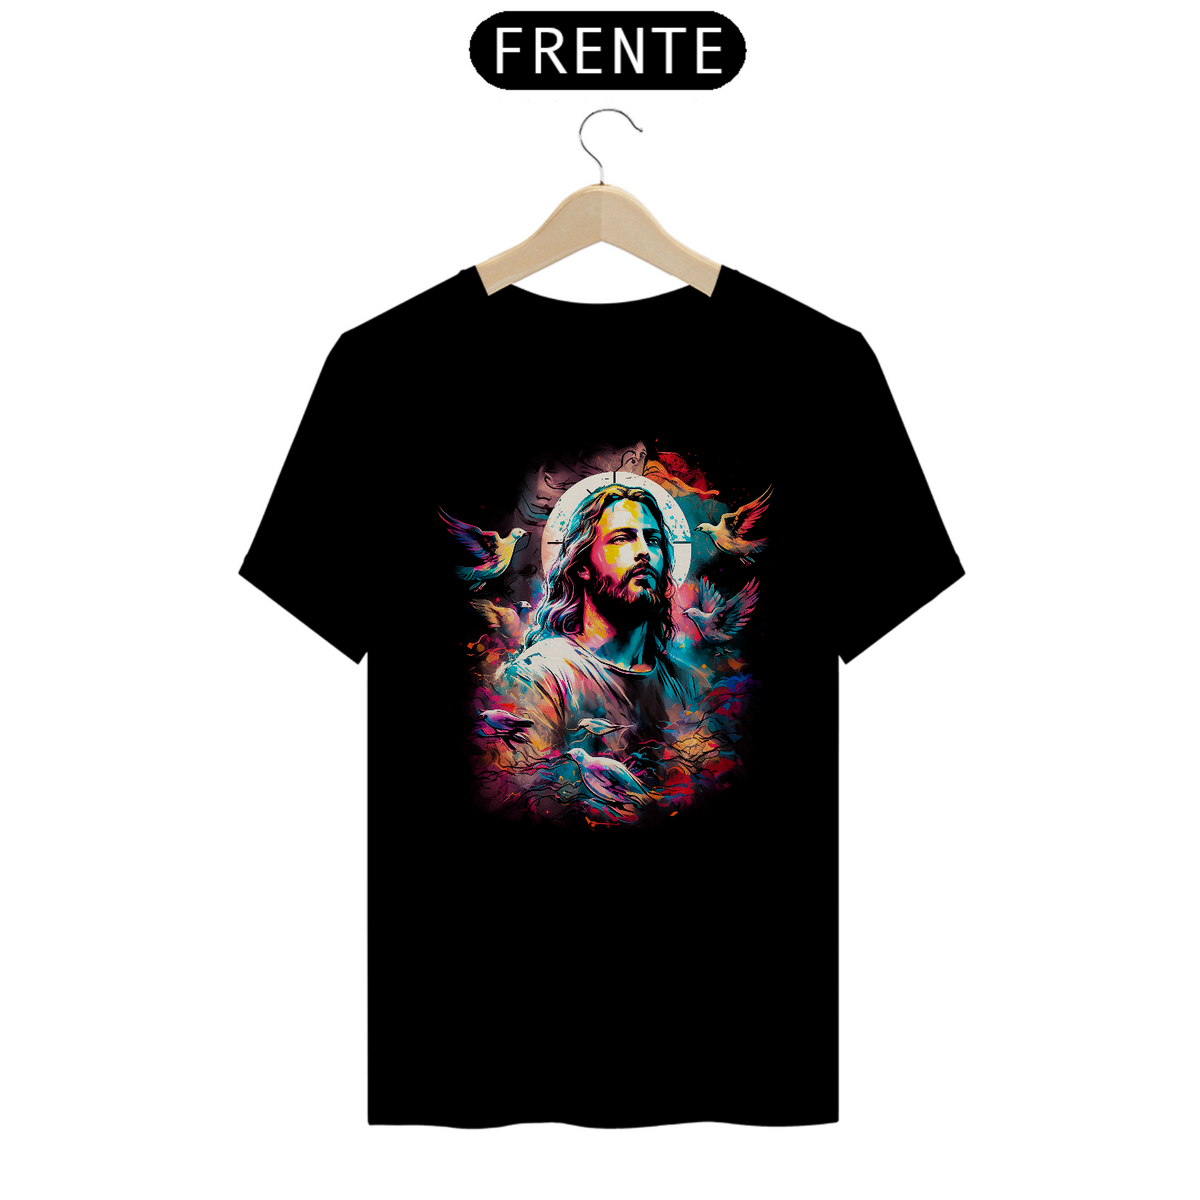 Nome do produto: Camisa - Jesus Cristo - Camiseta - Unissex - Premium (Cor Preta)